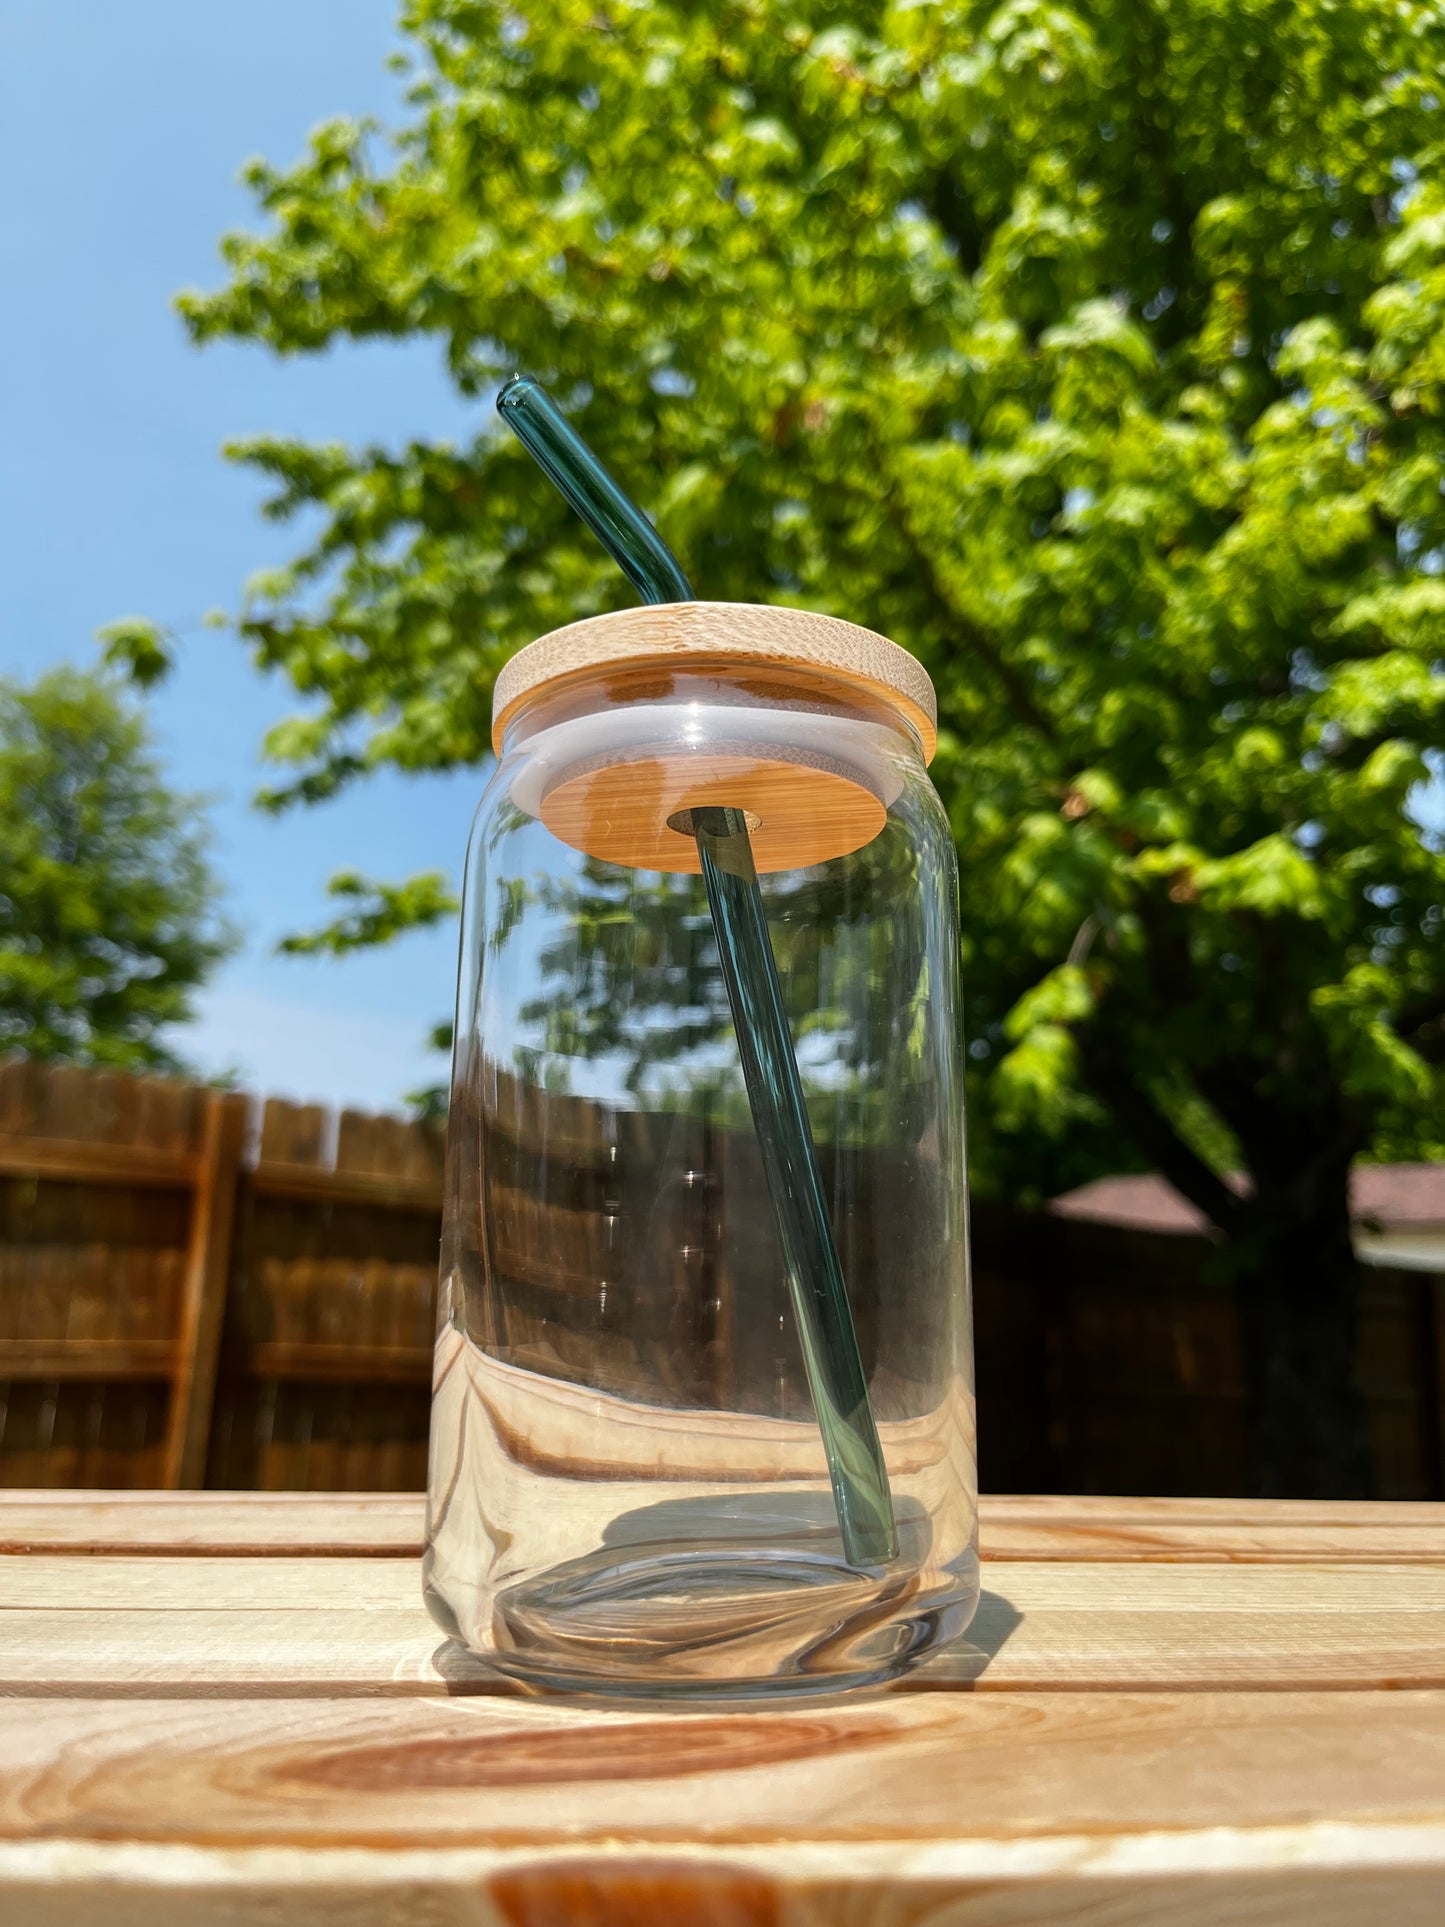 Teal Bent Reusable Glass Straw